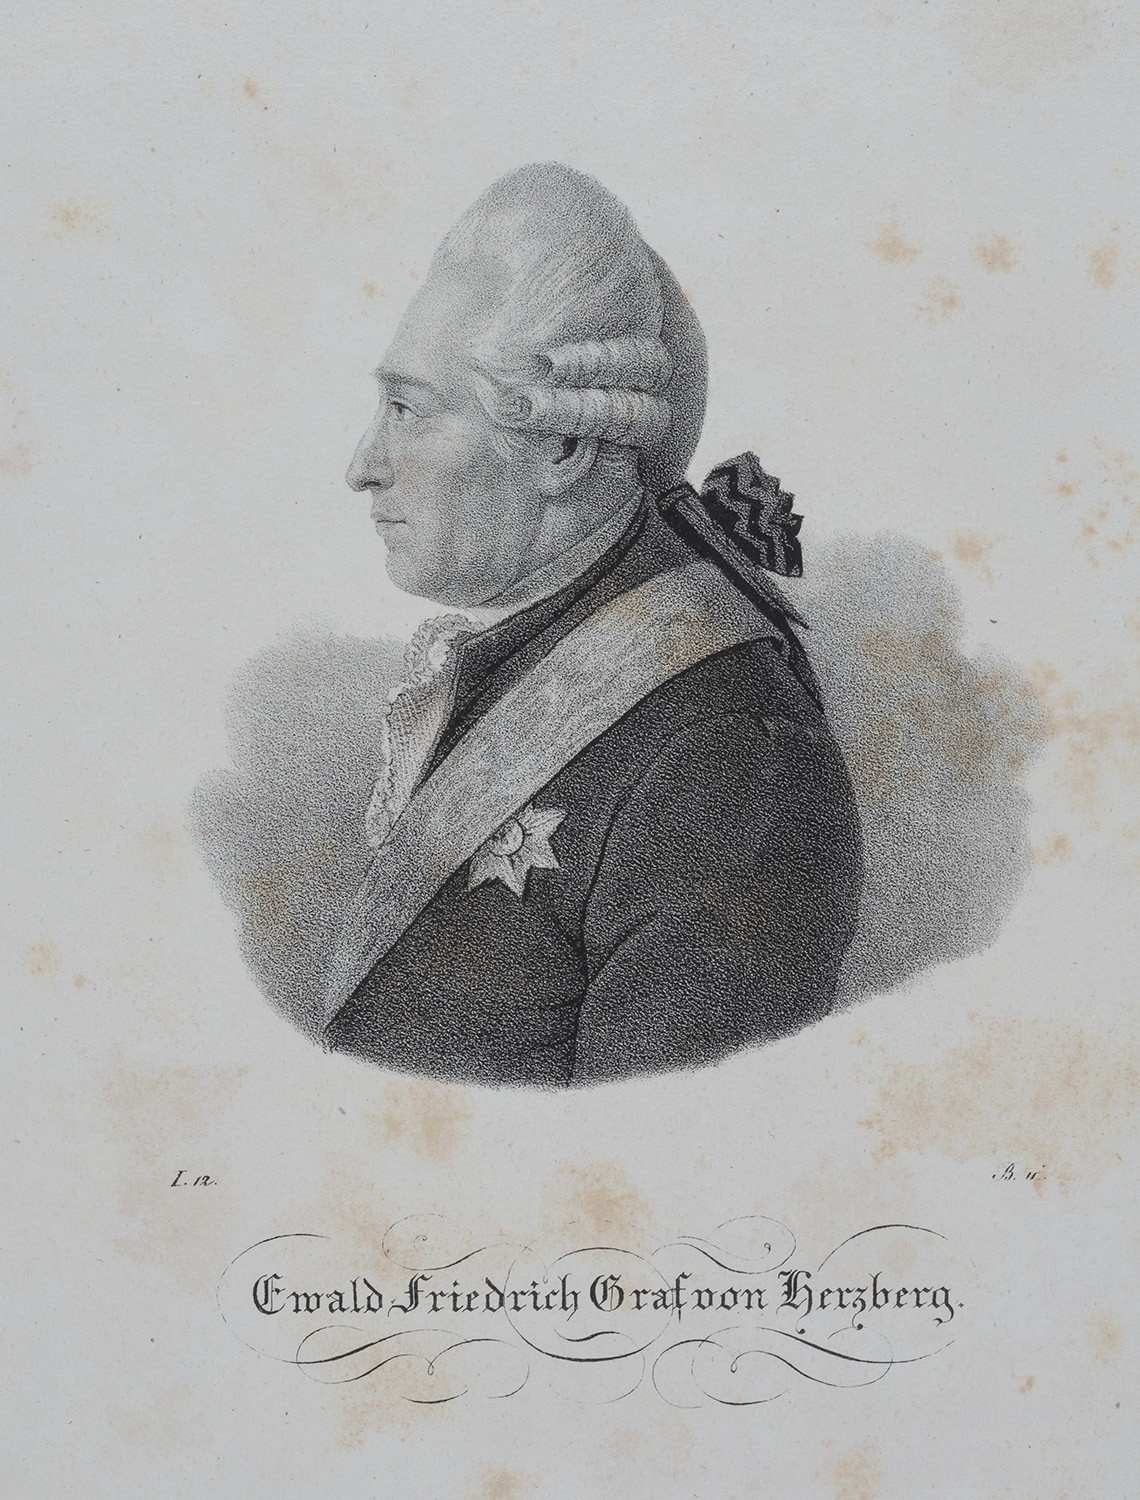 Hertzberg, Ewald Friedrich Graf von (1725-1795), preuß. Minister (Landesgeschichtliche Vereinigung für die Mark Brandenburg e.V., Archiv CC BY)